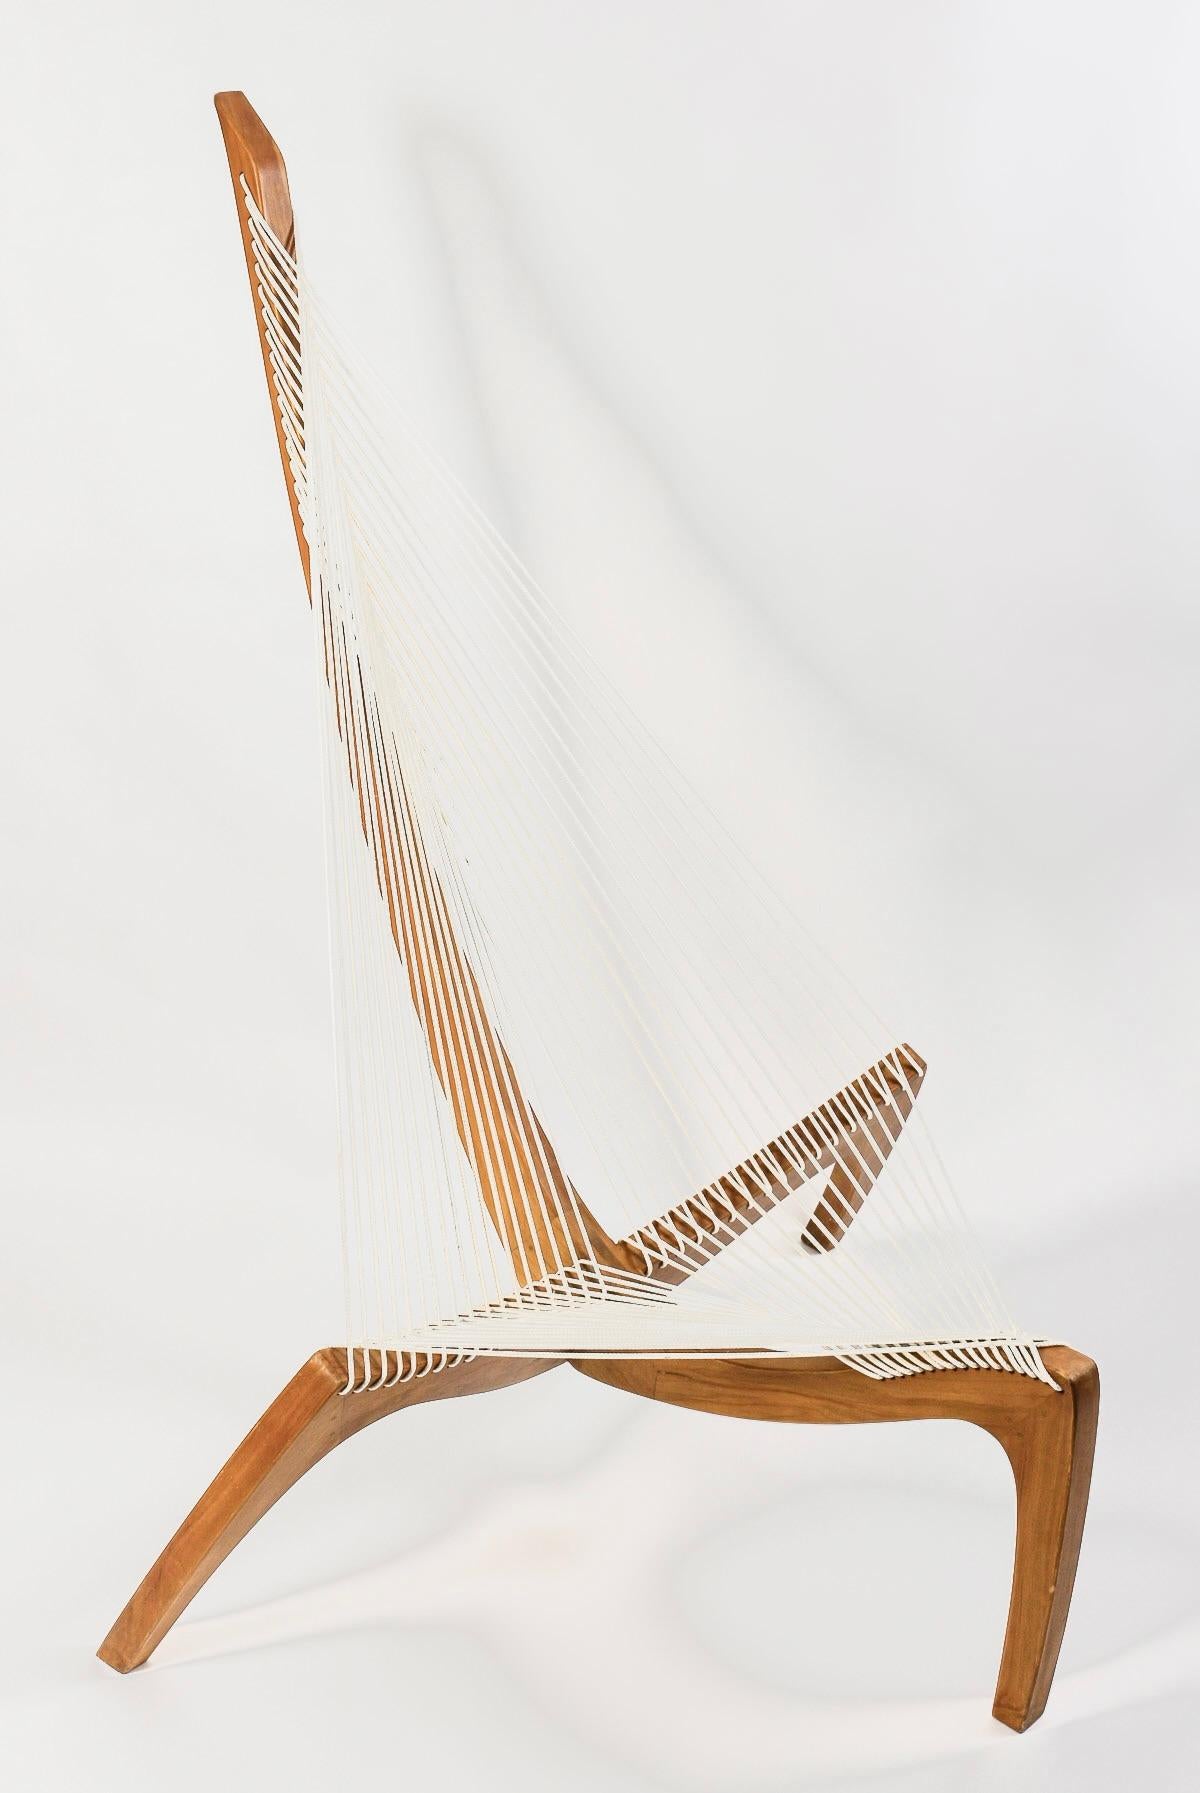 Danish 1970 Pair harp chair by Jørgen Høvelskov for Christensen & Larsen Møbelhandværk.